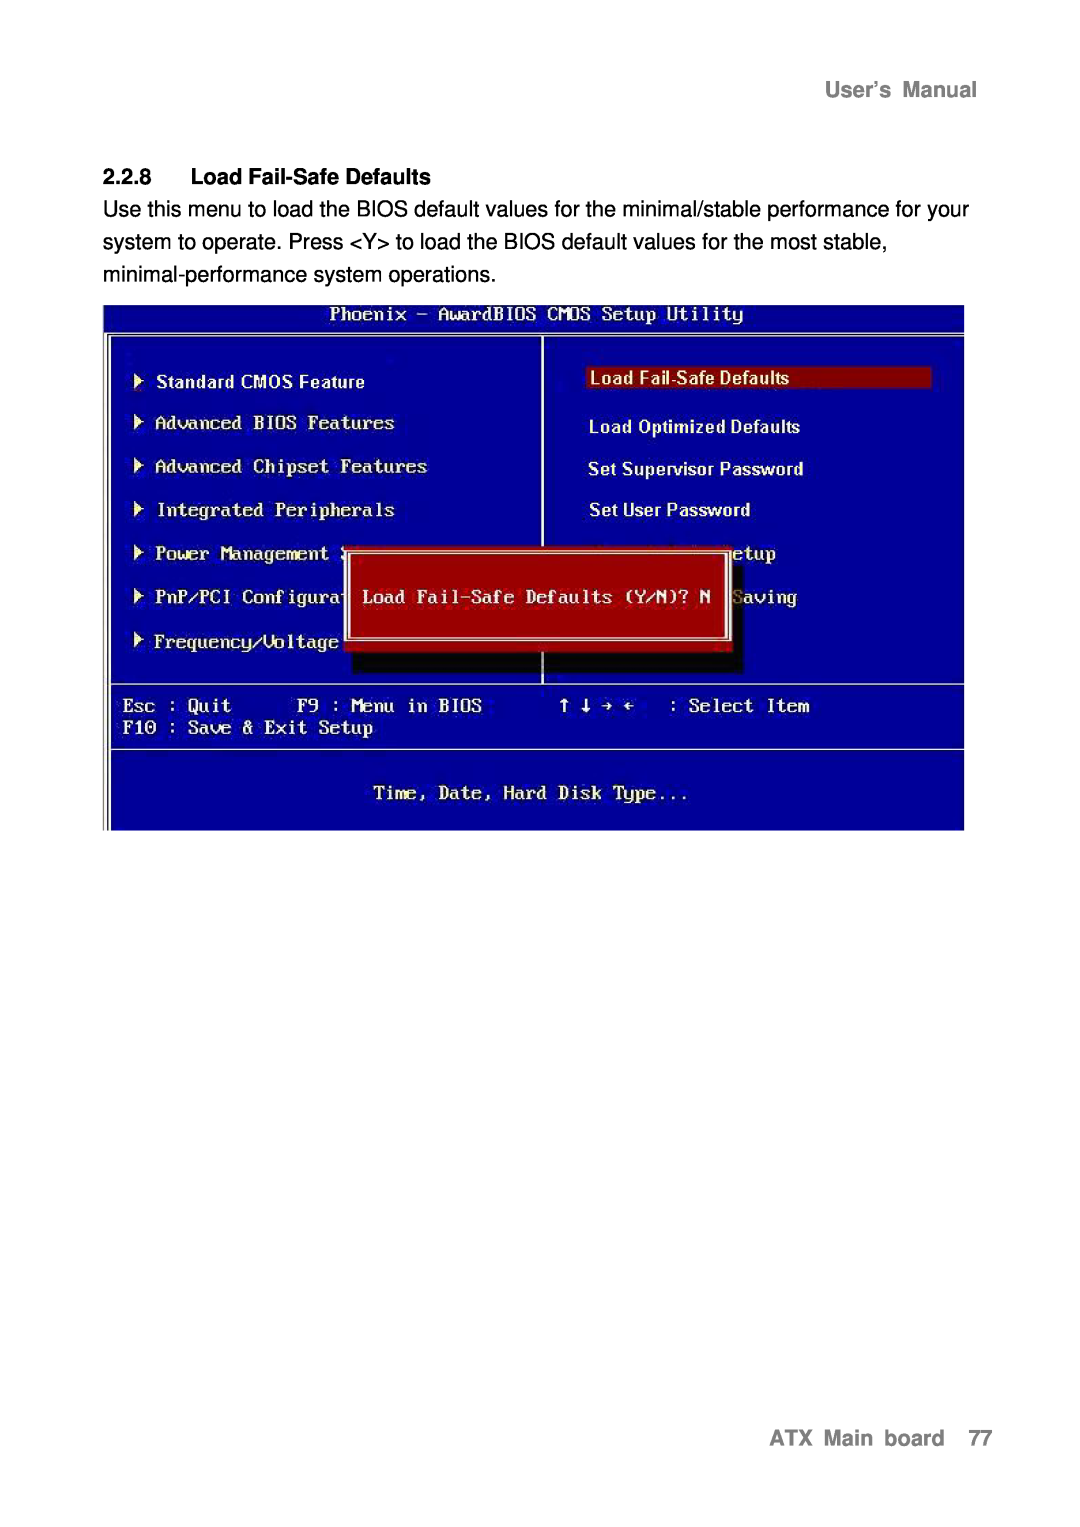 Intel AX965Q user manual Load Fail-Safe Defaults, User’s Manual, ATX Main board 